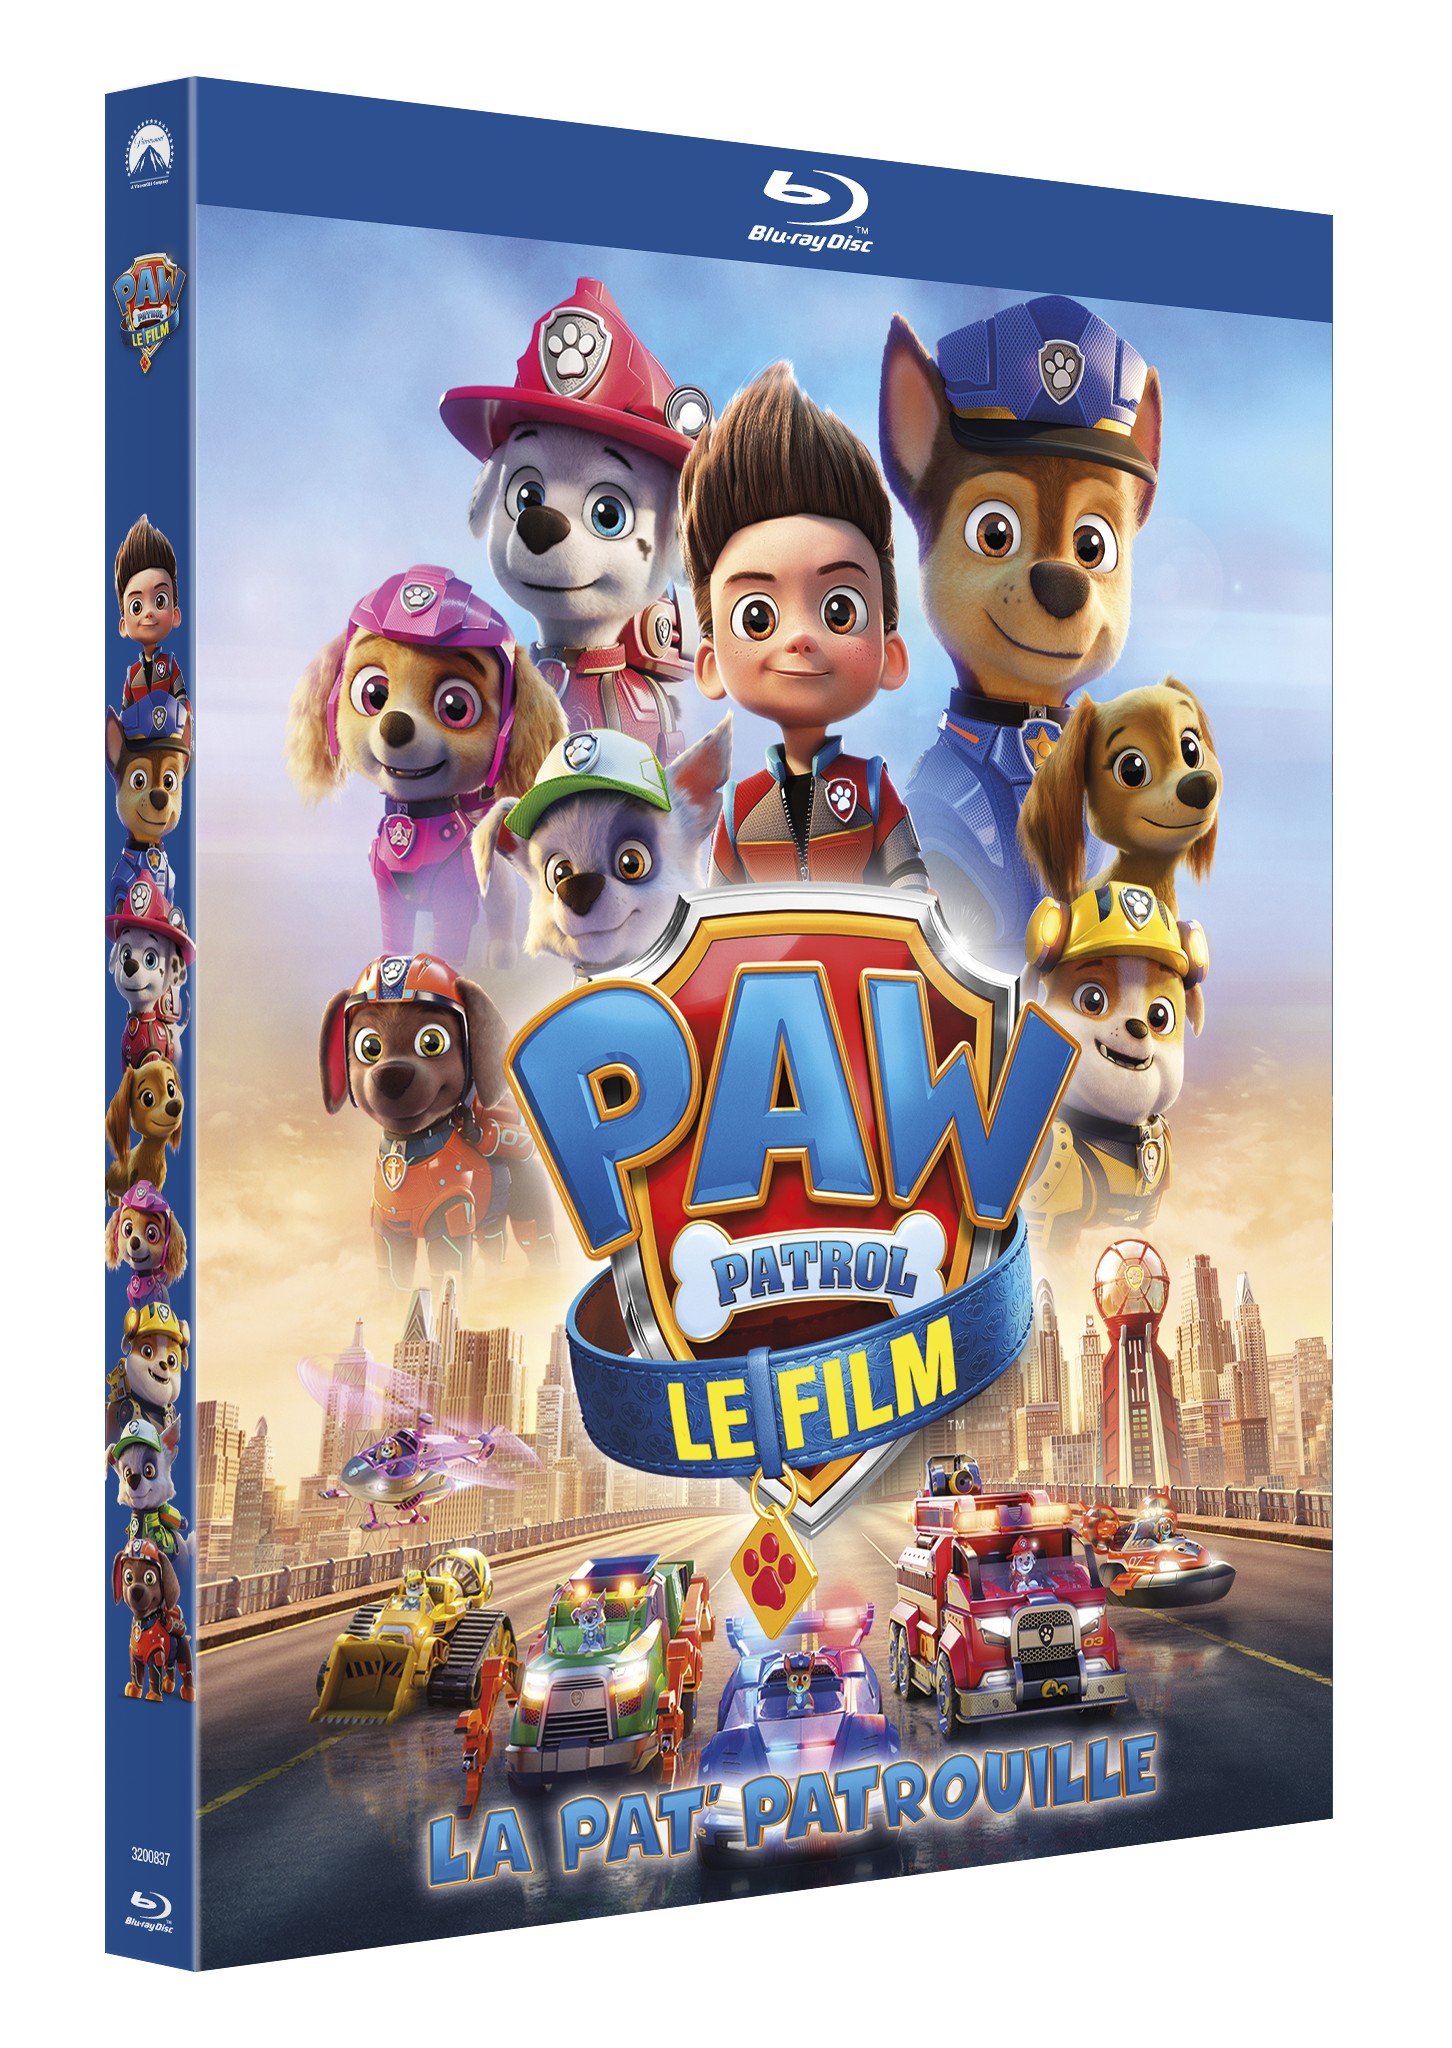 La Pat' Patrouille : le film» : encore mieux que la série - Le Parisien